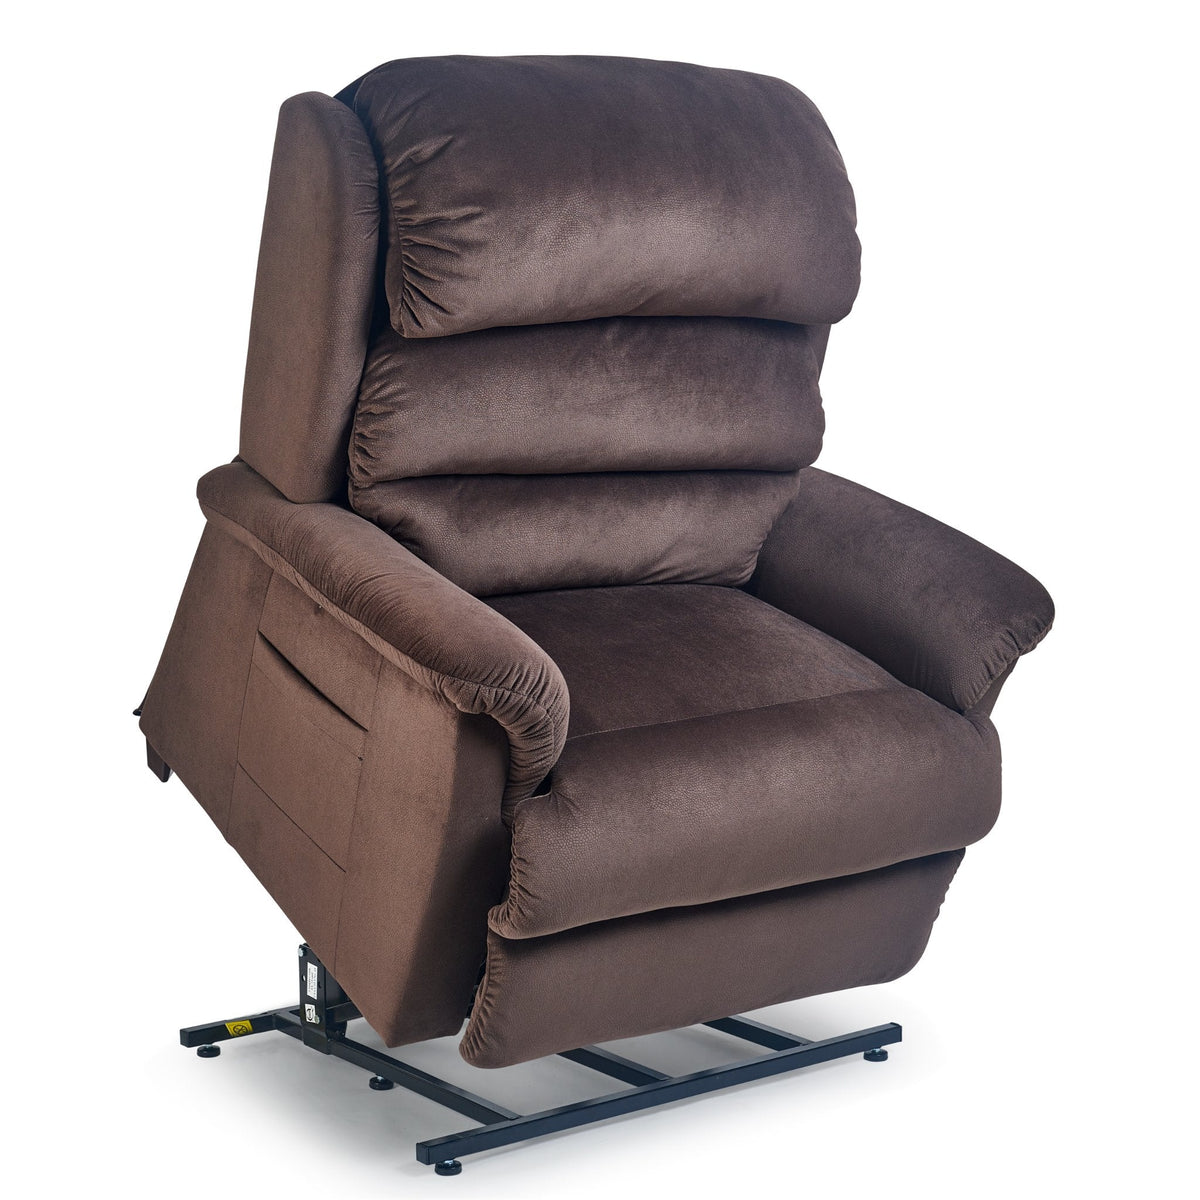 UltraComfort Mira Medium-Wide Power Lift Chair Recliner